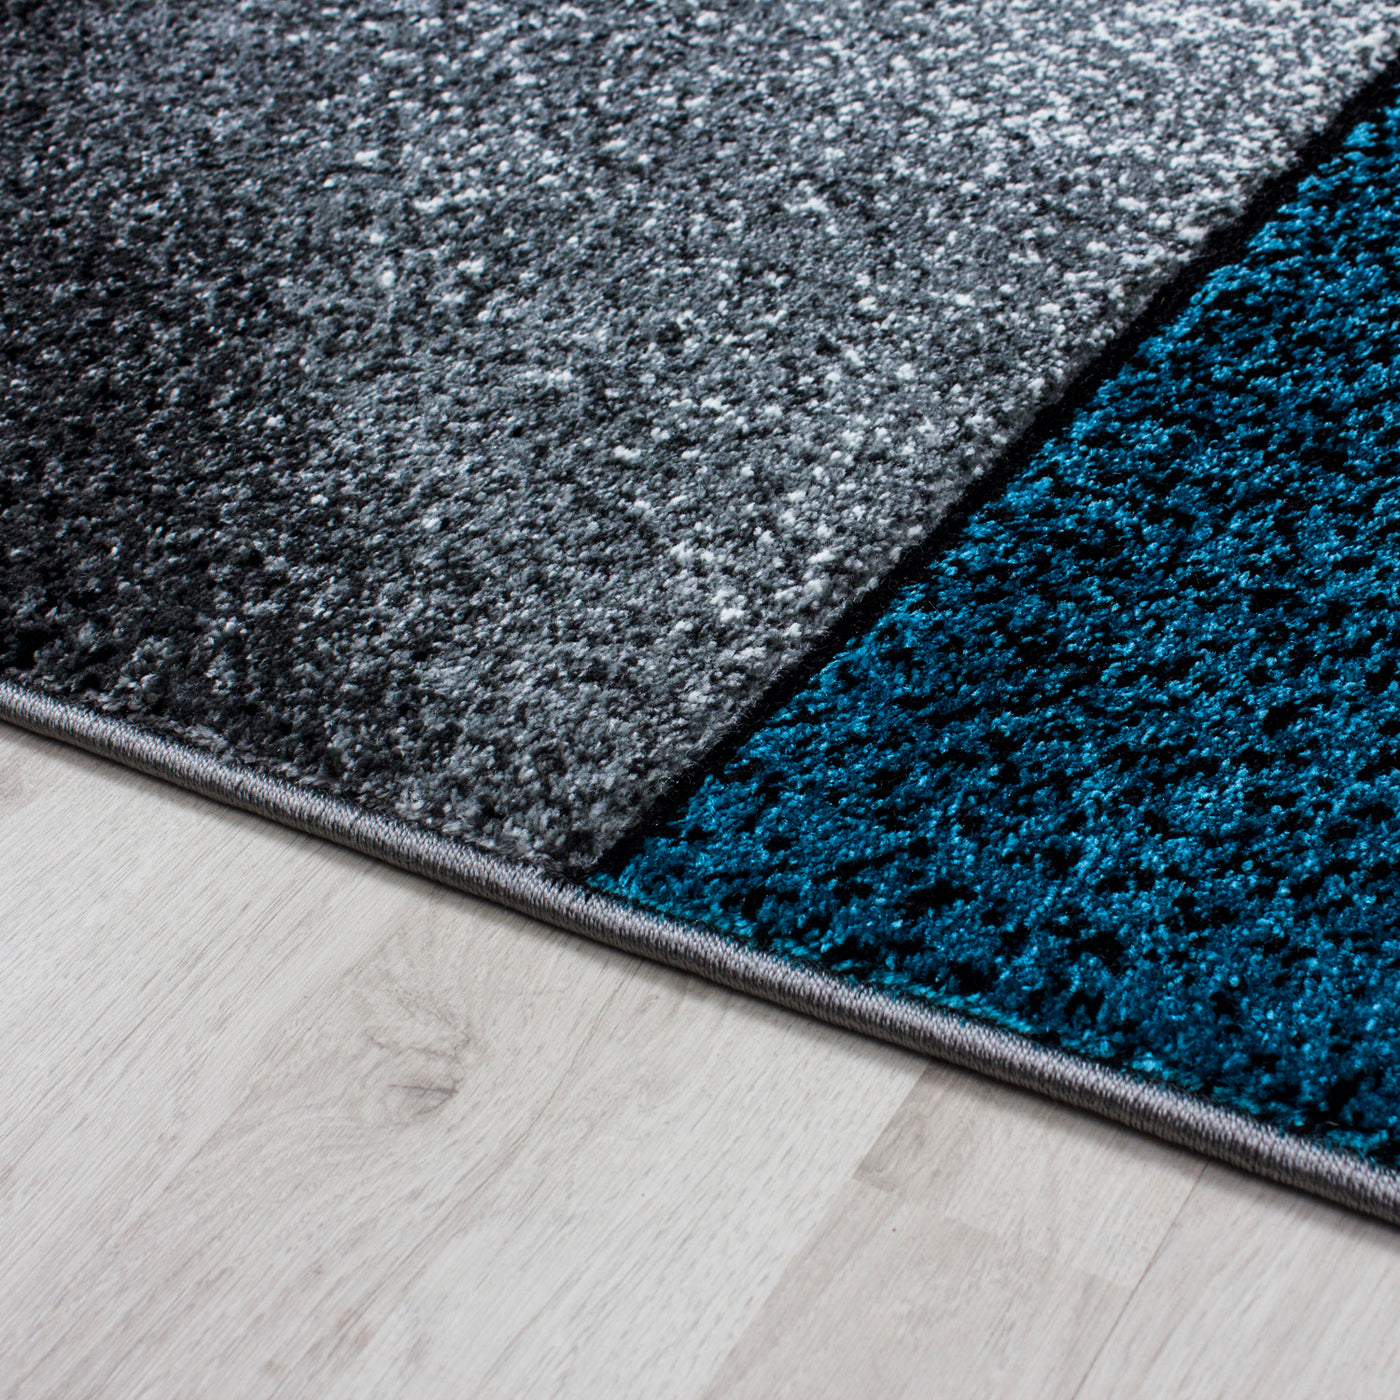 Bettumrandung Läufer Teppich Modern Designer Läuferset Kariert Linien Muster 3 Teilig Schwarz Grau Blau Weiß